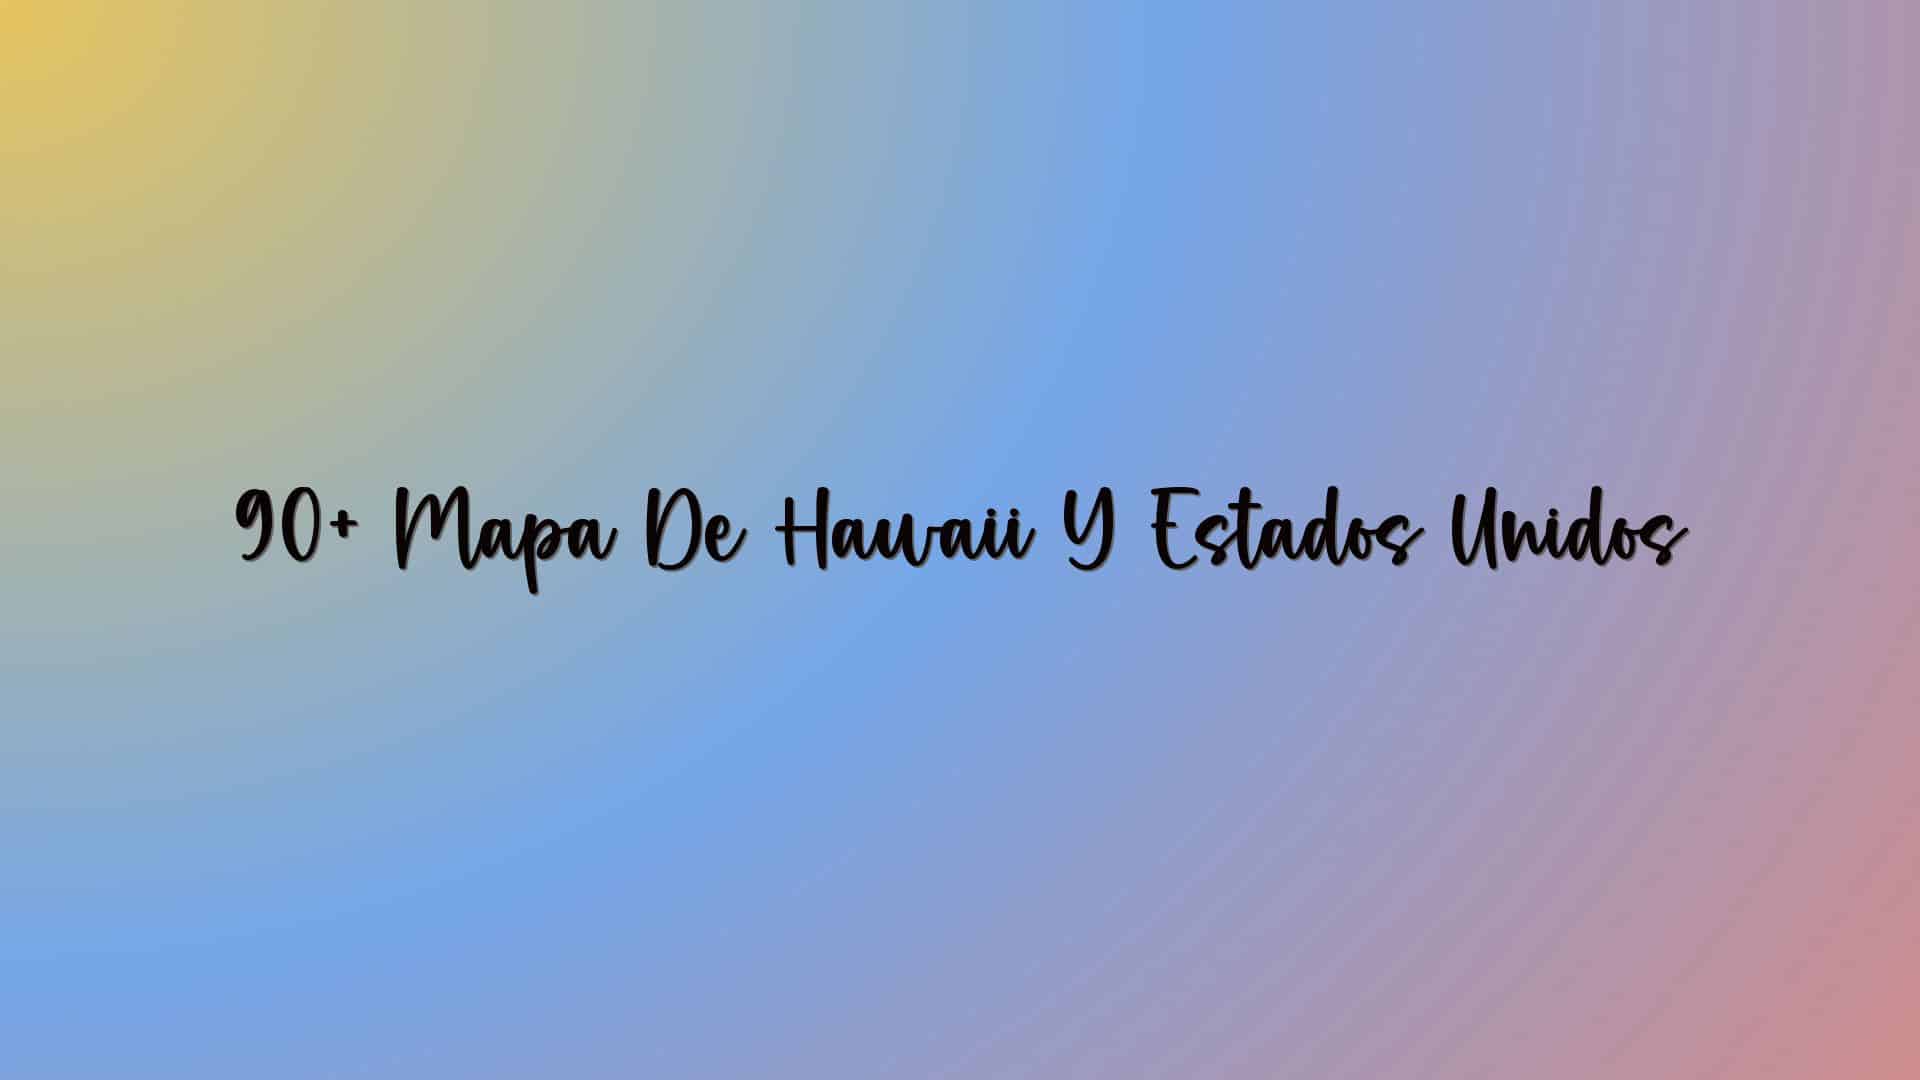 90+ Mapa De Hawaii Y Estados Unidos